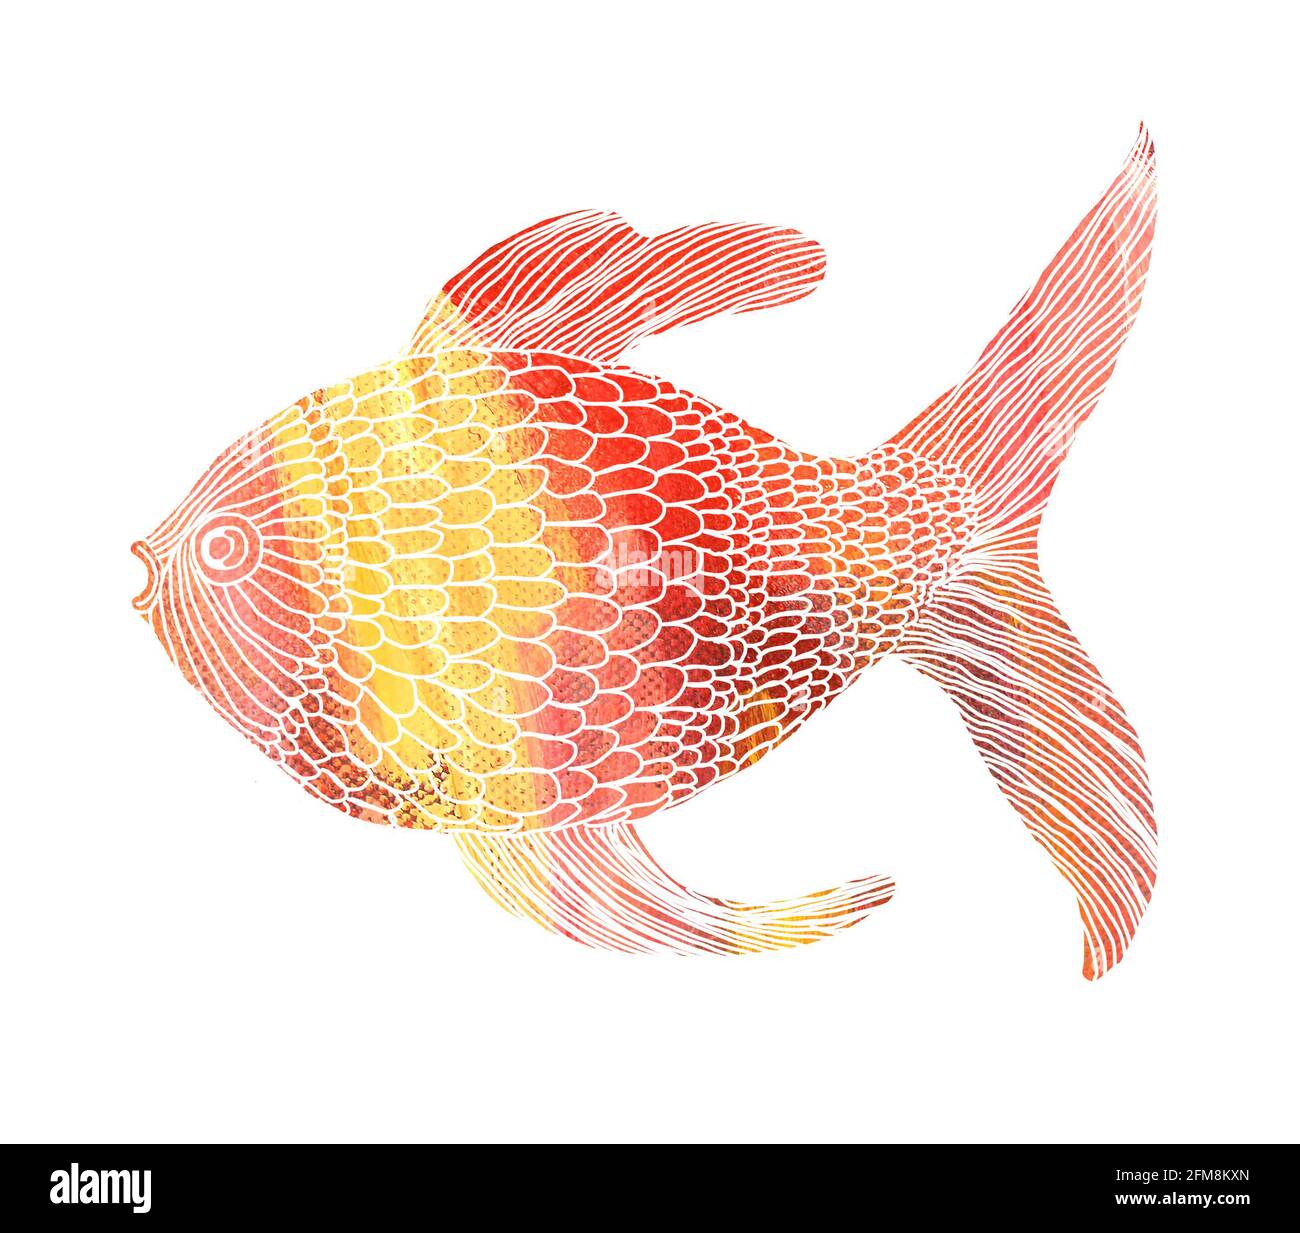 Illustrazione di un pesce isolato creato utilizzando mezzi misti (tradizionale e digitale) Foto Stock